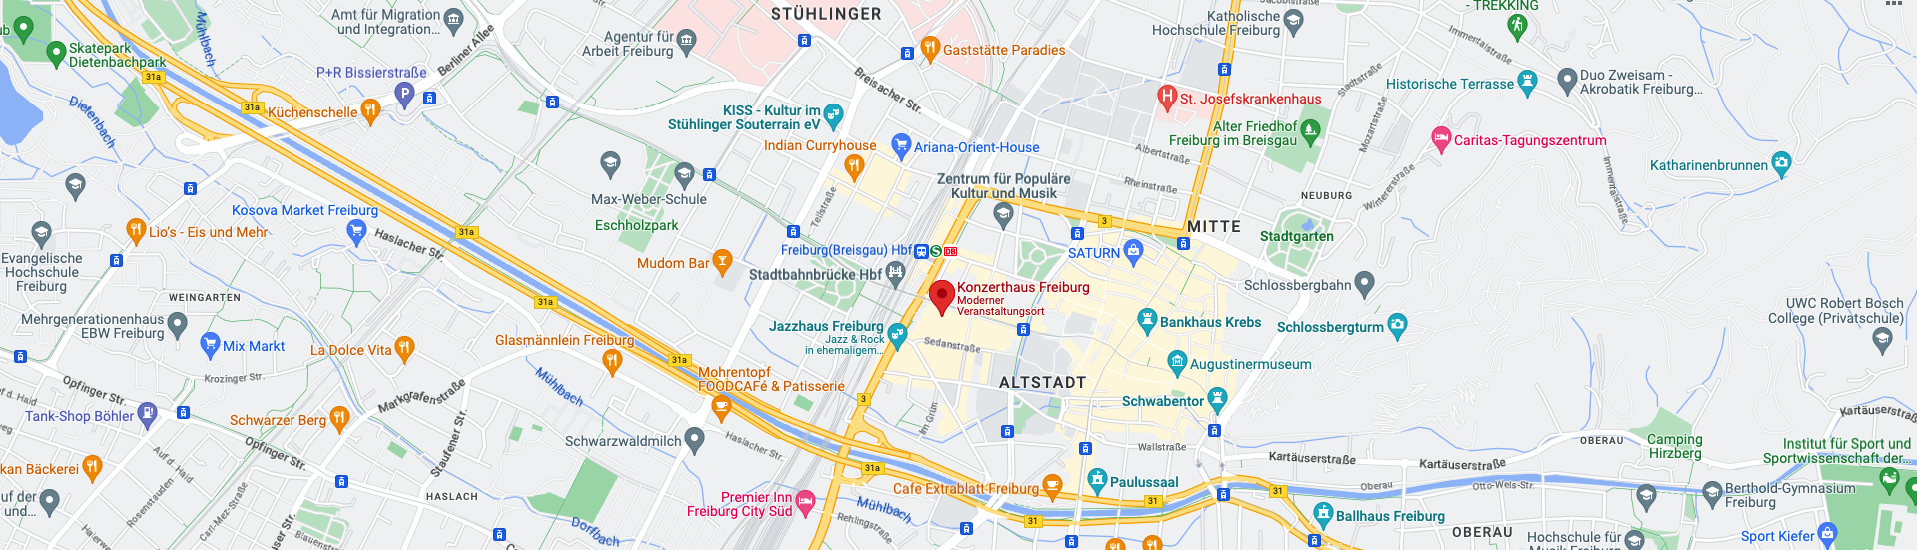 Karte Kongress Konzerthaus Freiburg